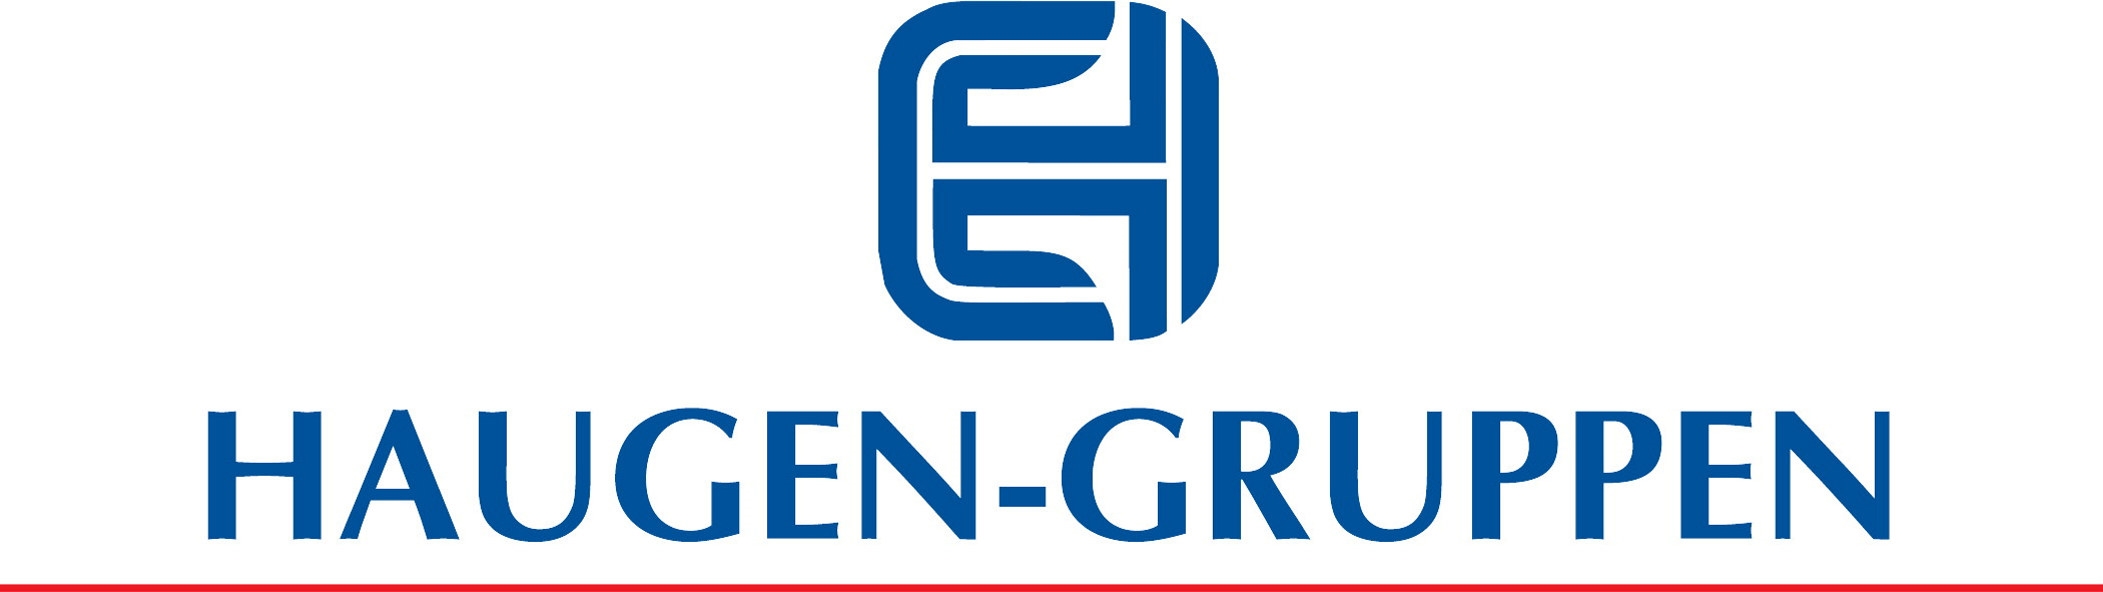 Logoen til Haugen-Gruppen